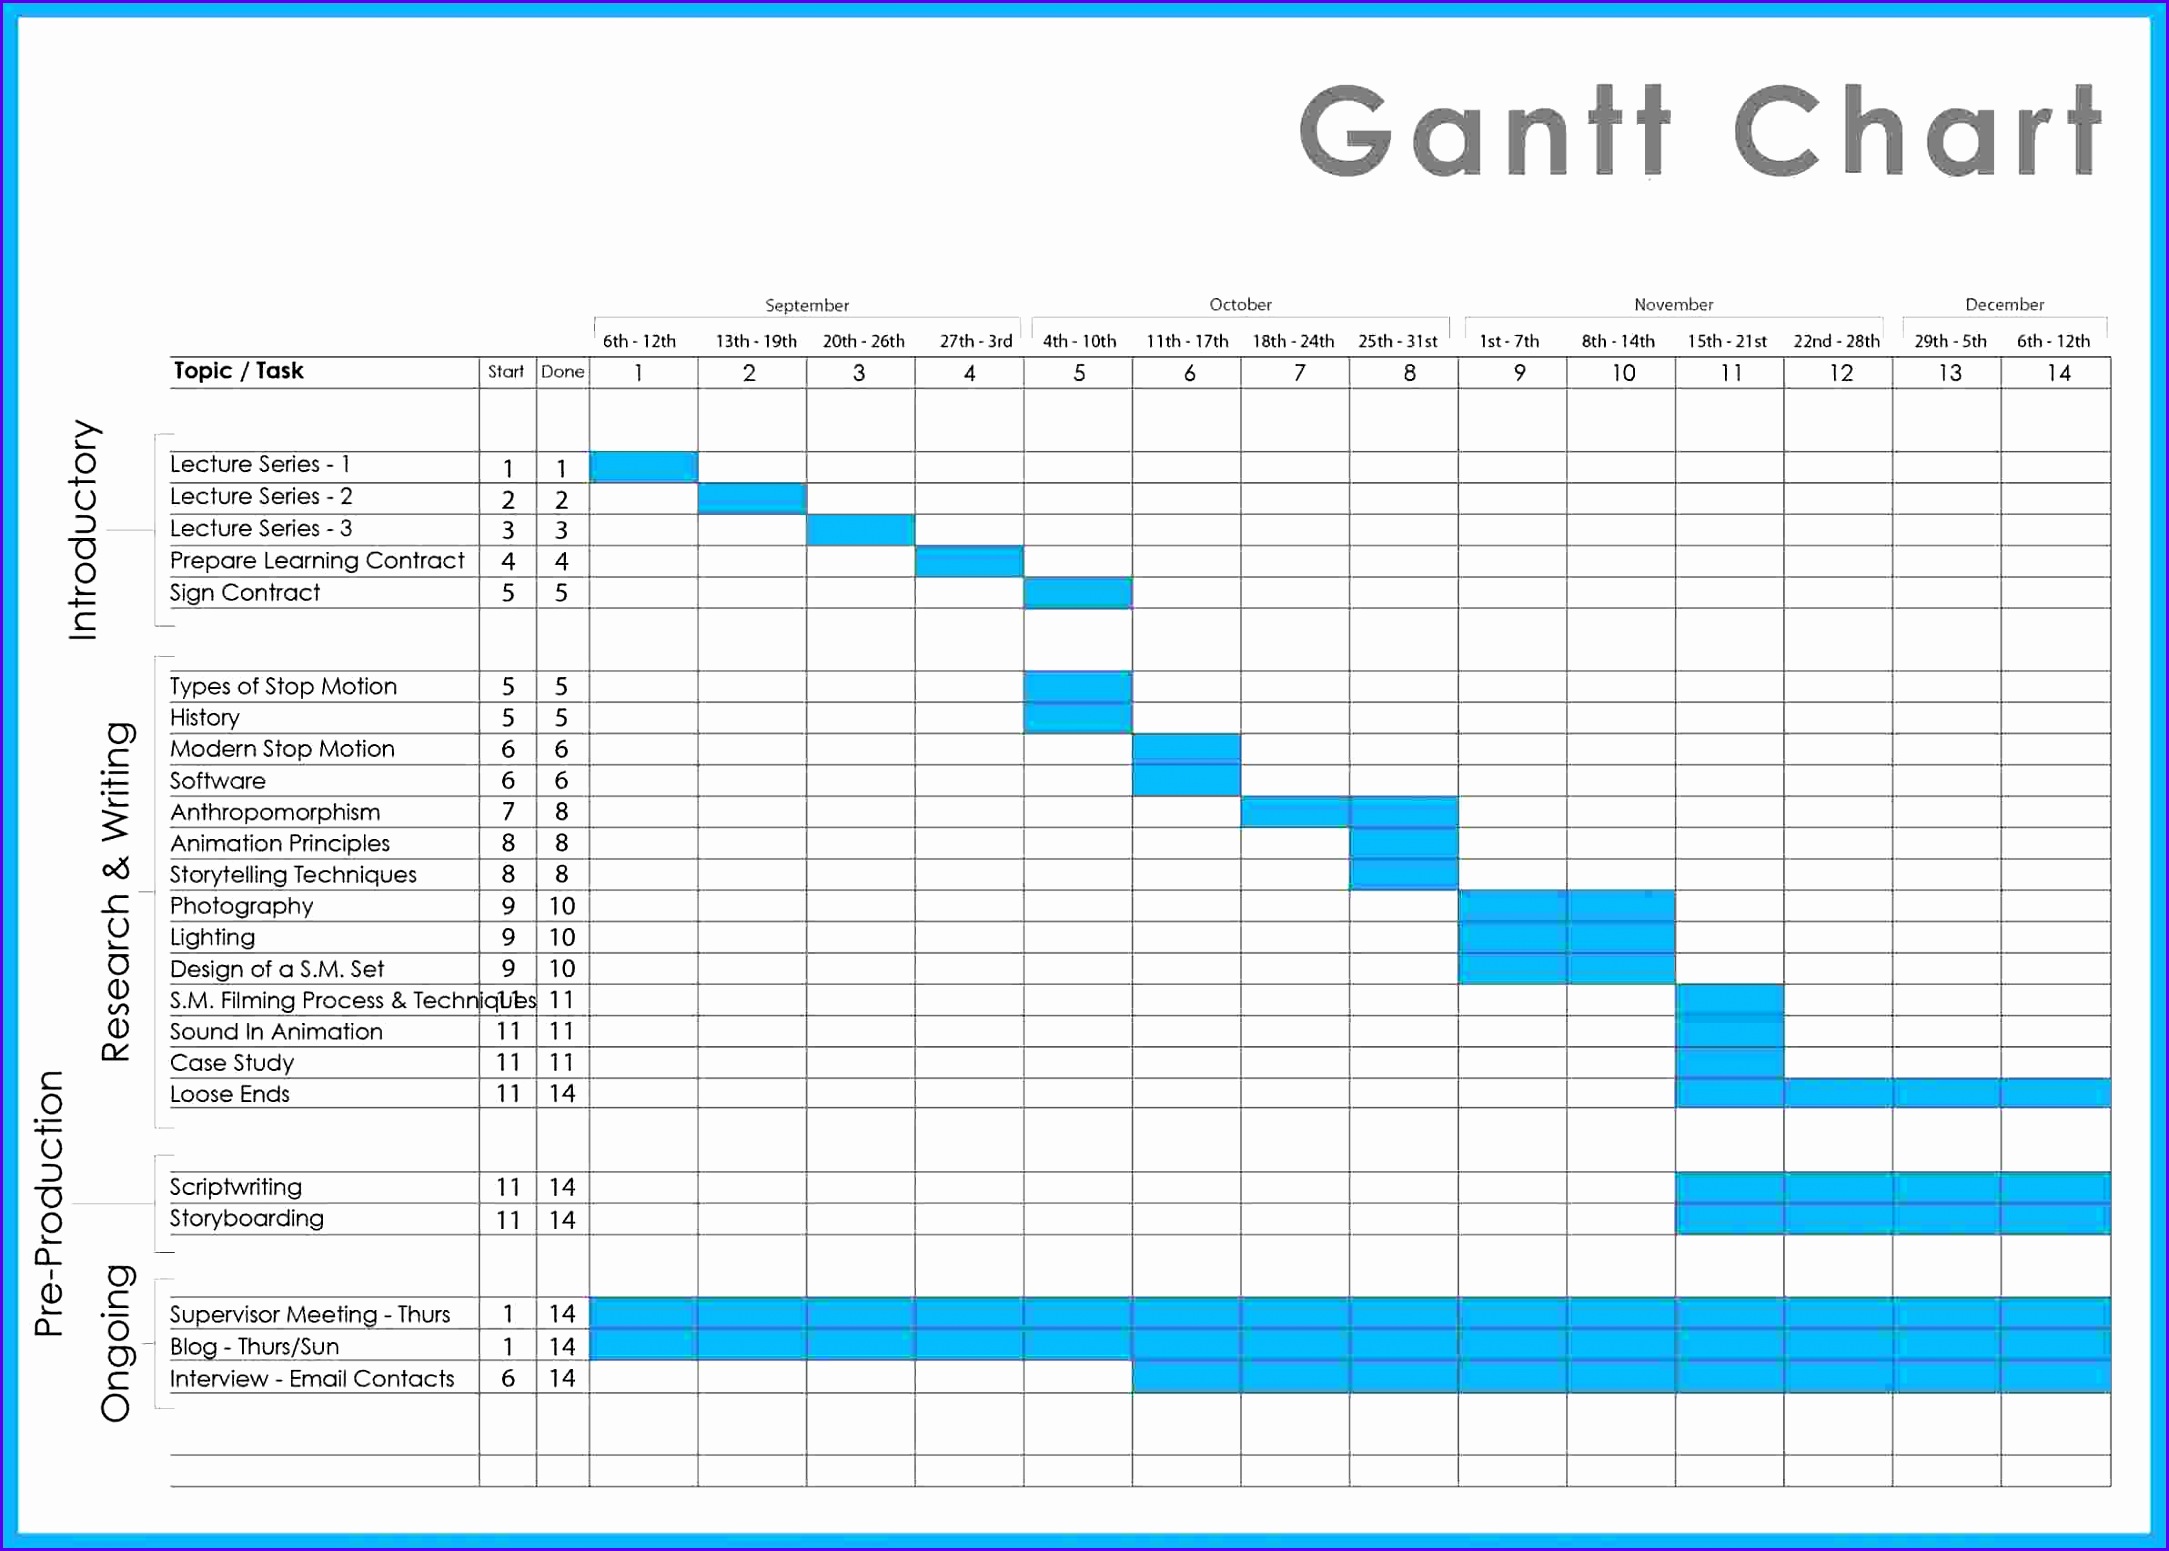 Gantt Chart Template Excel Ganttchart Template Gantt Chart Template Excel Gantt Chart Excel Templates 2010 1 21691551